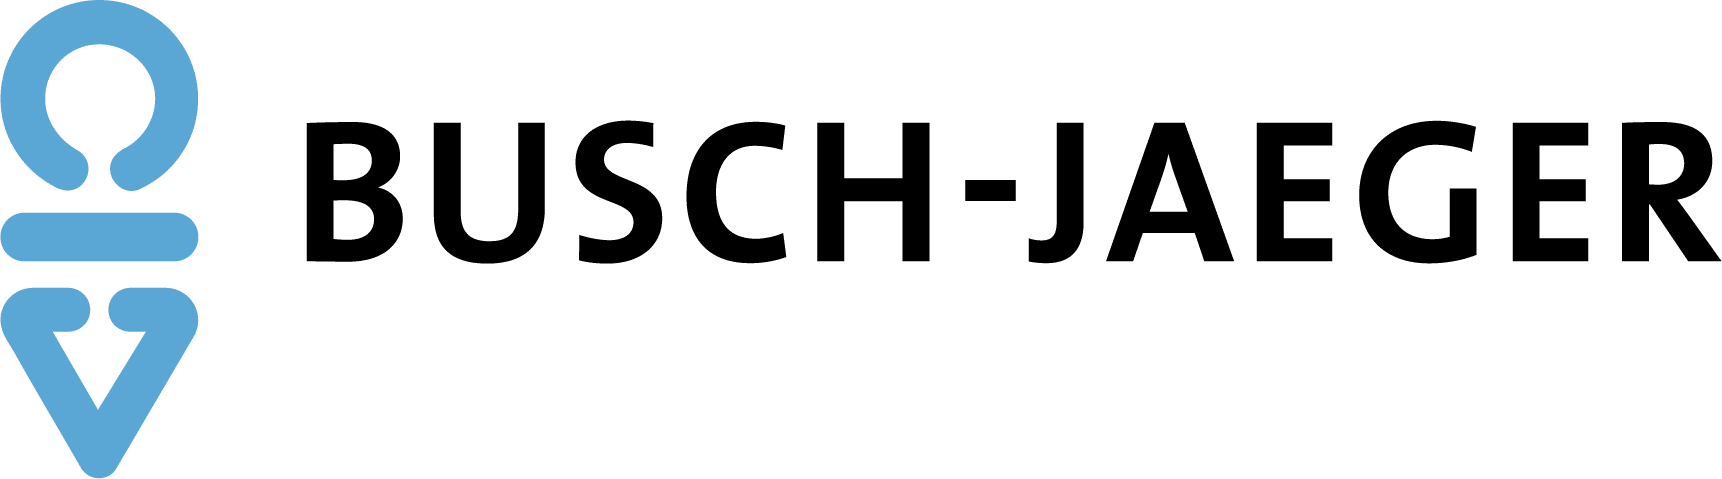 logo-busch-jaeger-1c-s